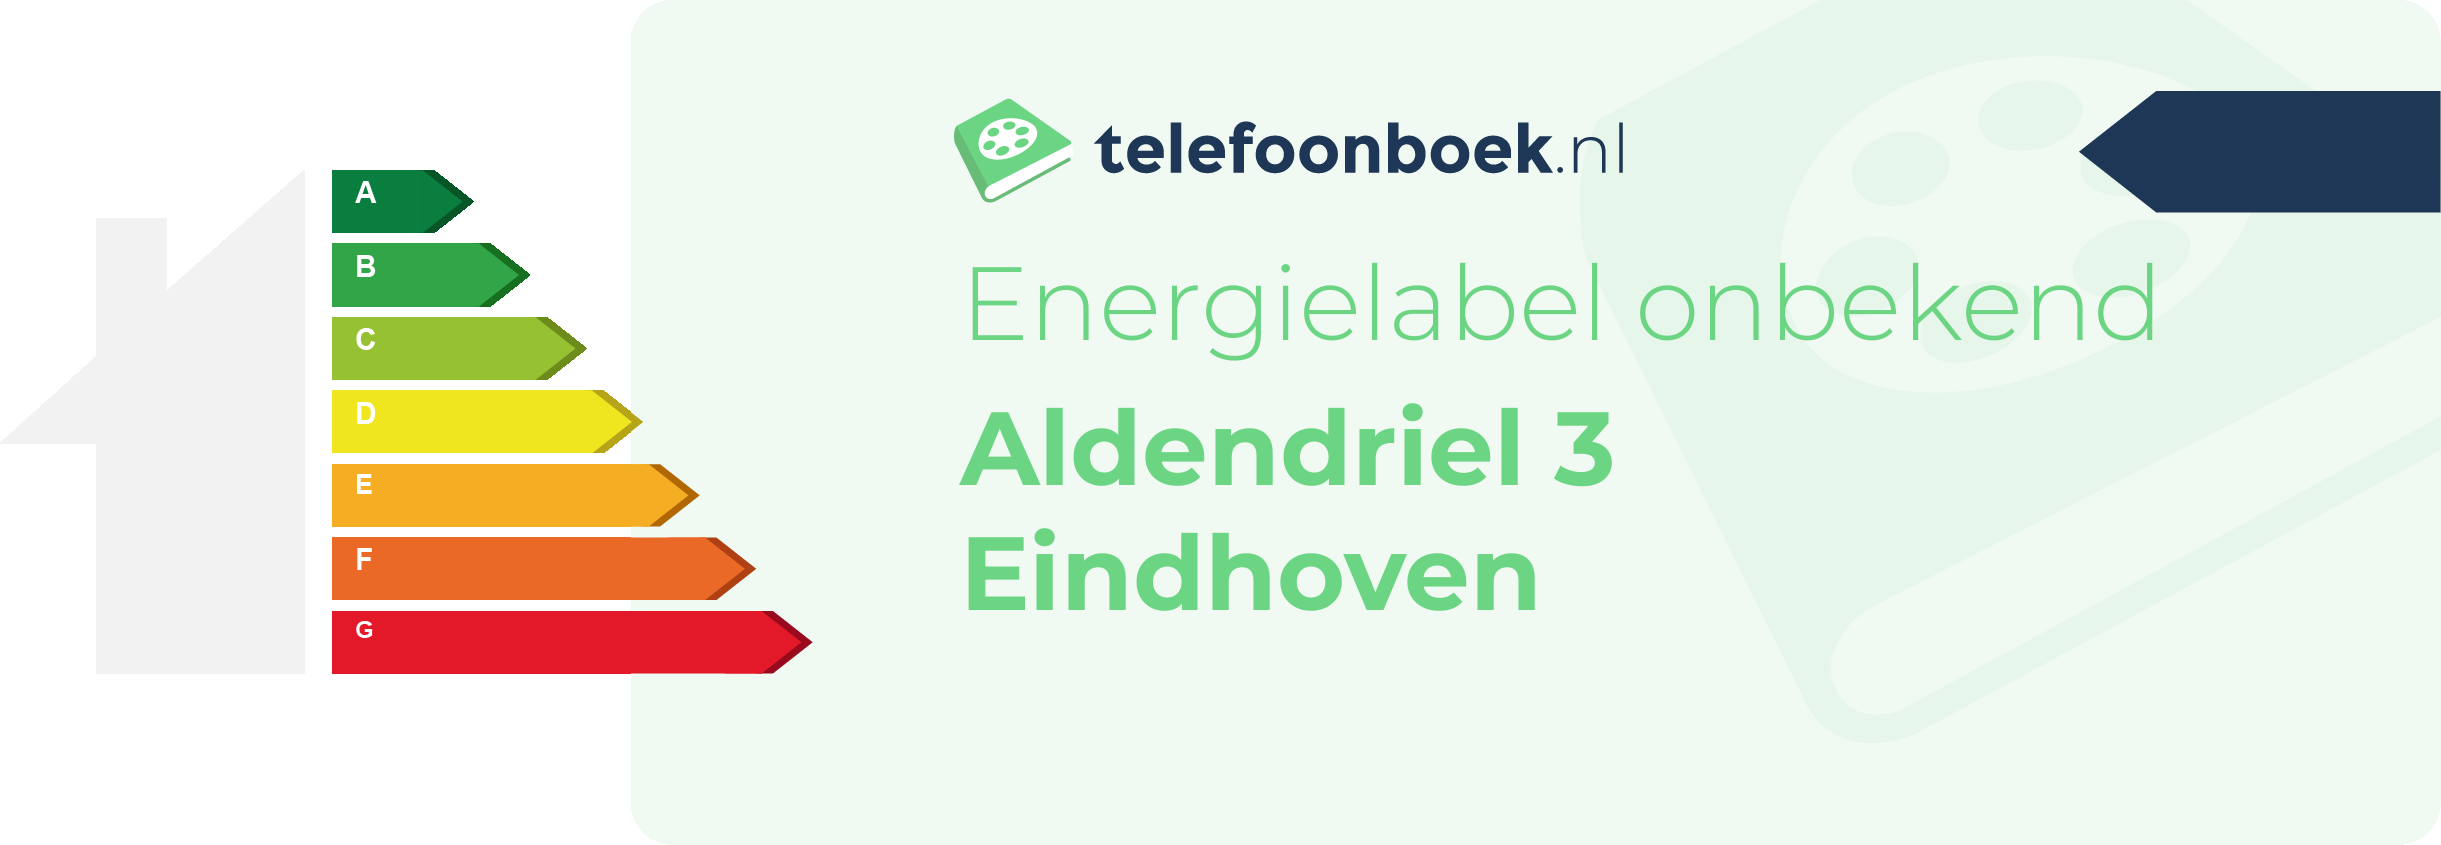 Energielabel Aldendriel 3 Eindhoven